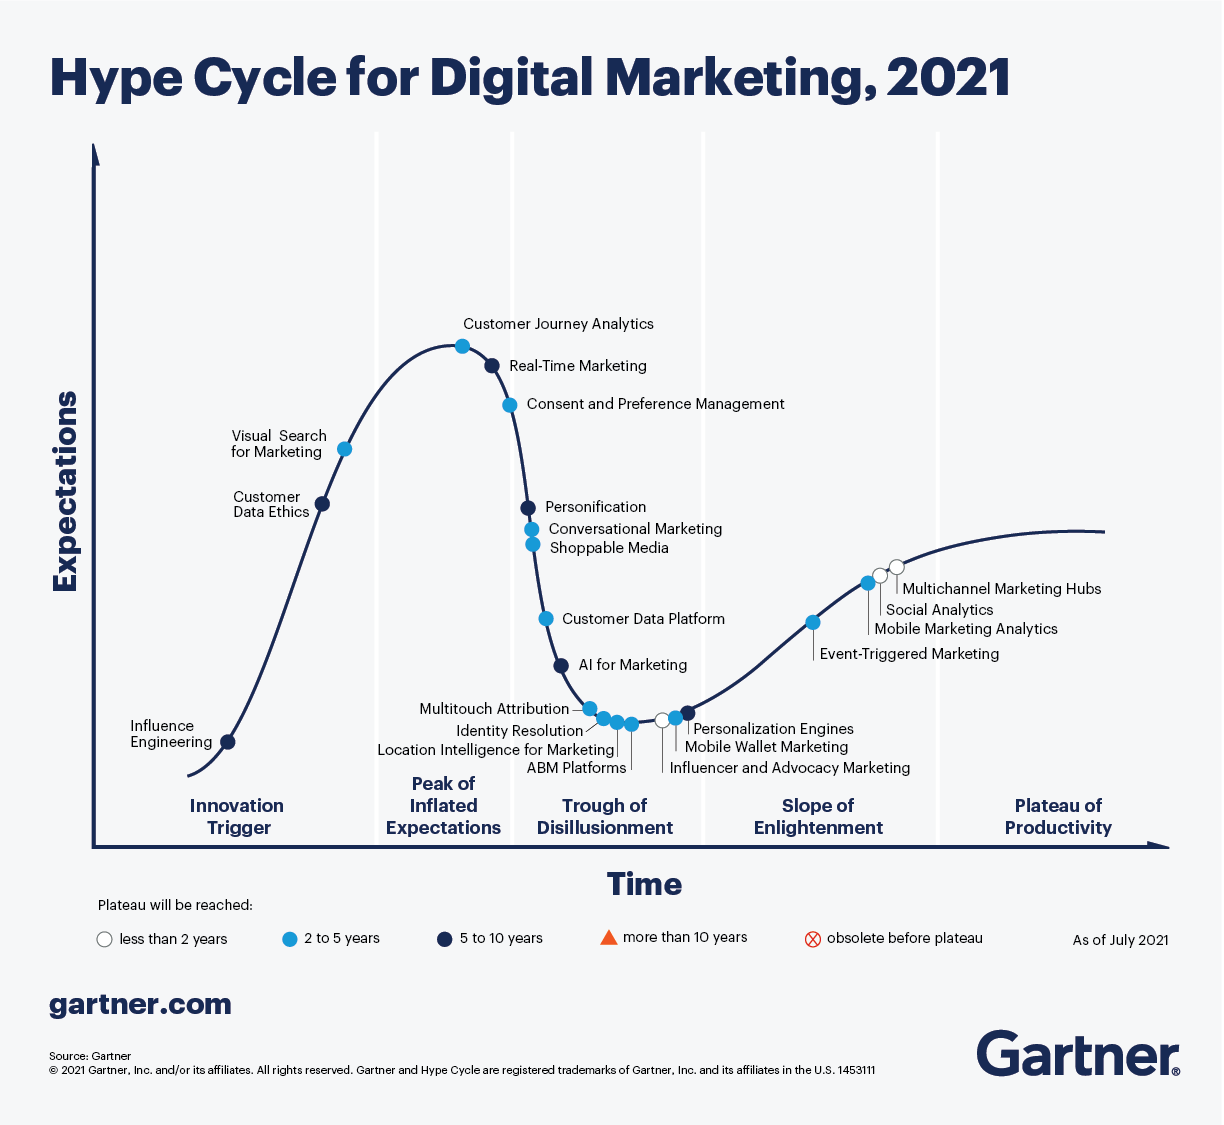 Gartner's 2021 Hype Cycle